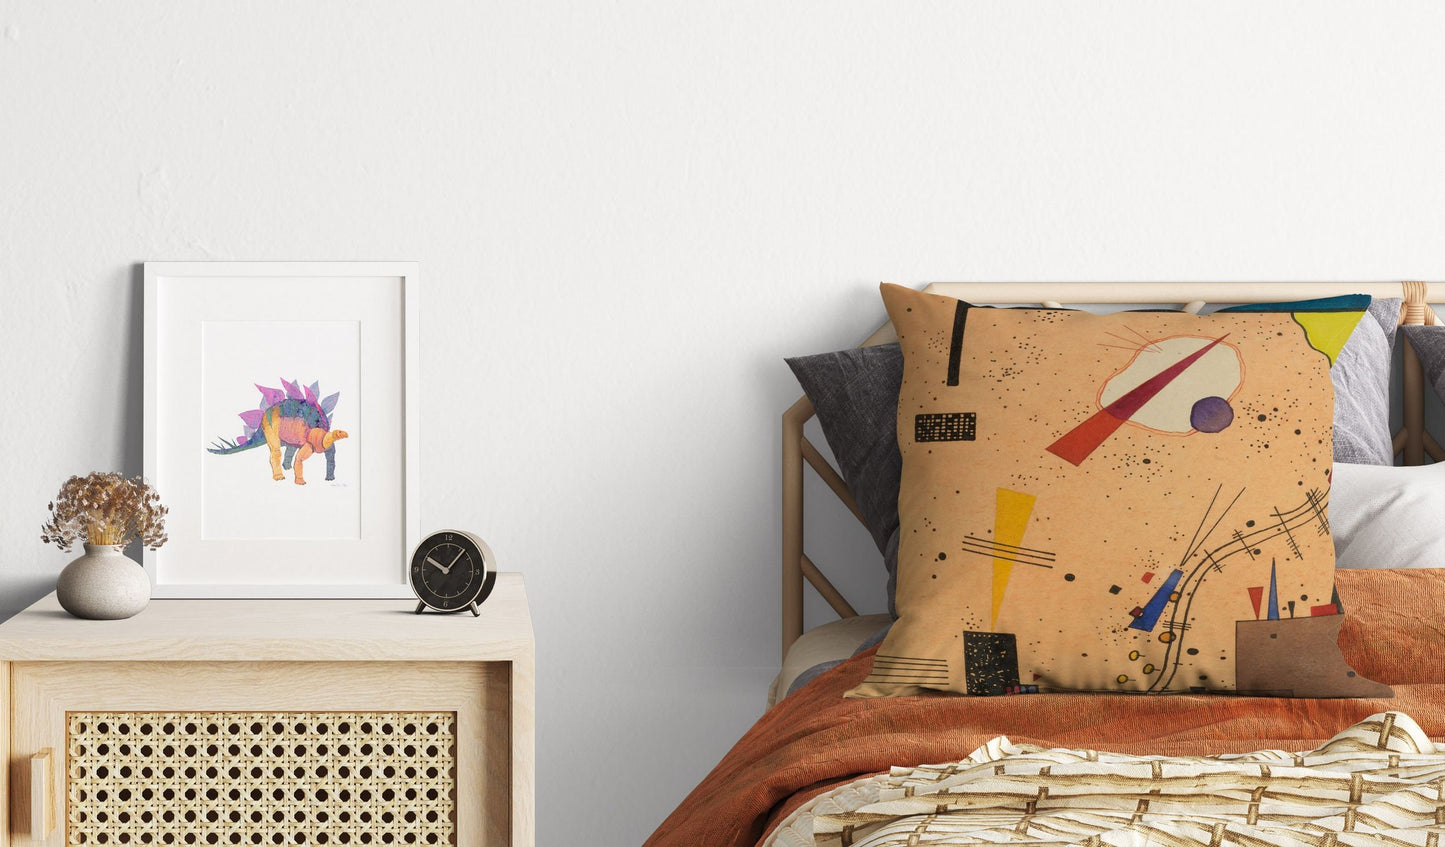 Wassily Kandinsky Abstract Painting, Pillow Case, Abstract Pillow Case, Art Pillow, Colorful Pillow Case, Modern Pillow, 18 X 18 Pillow